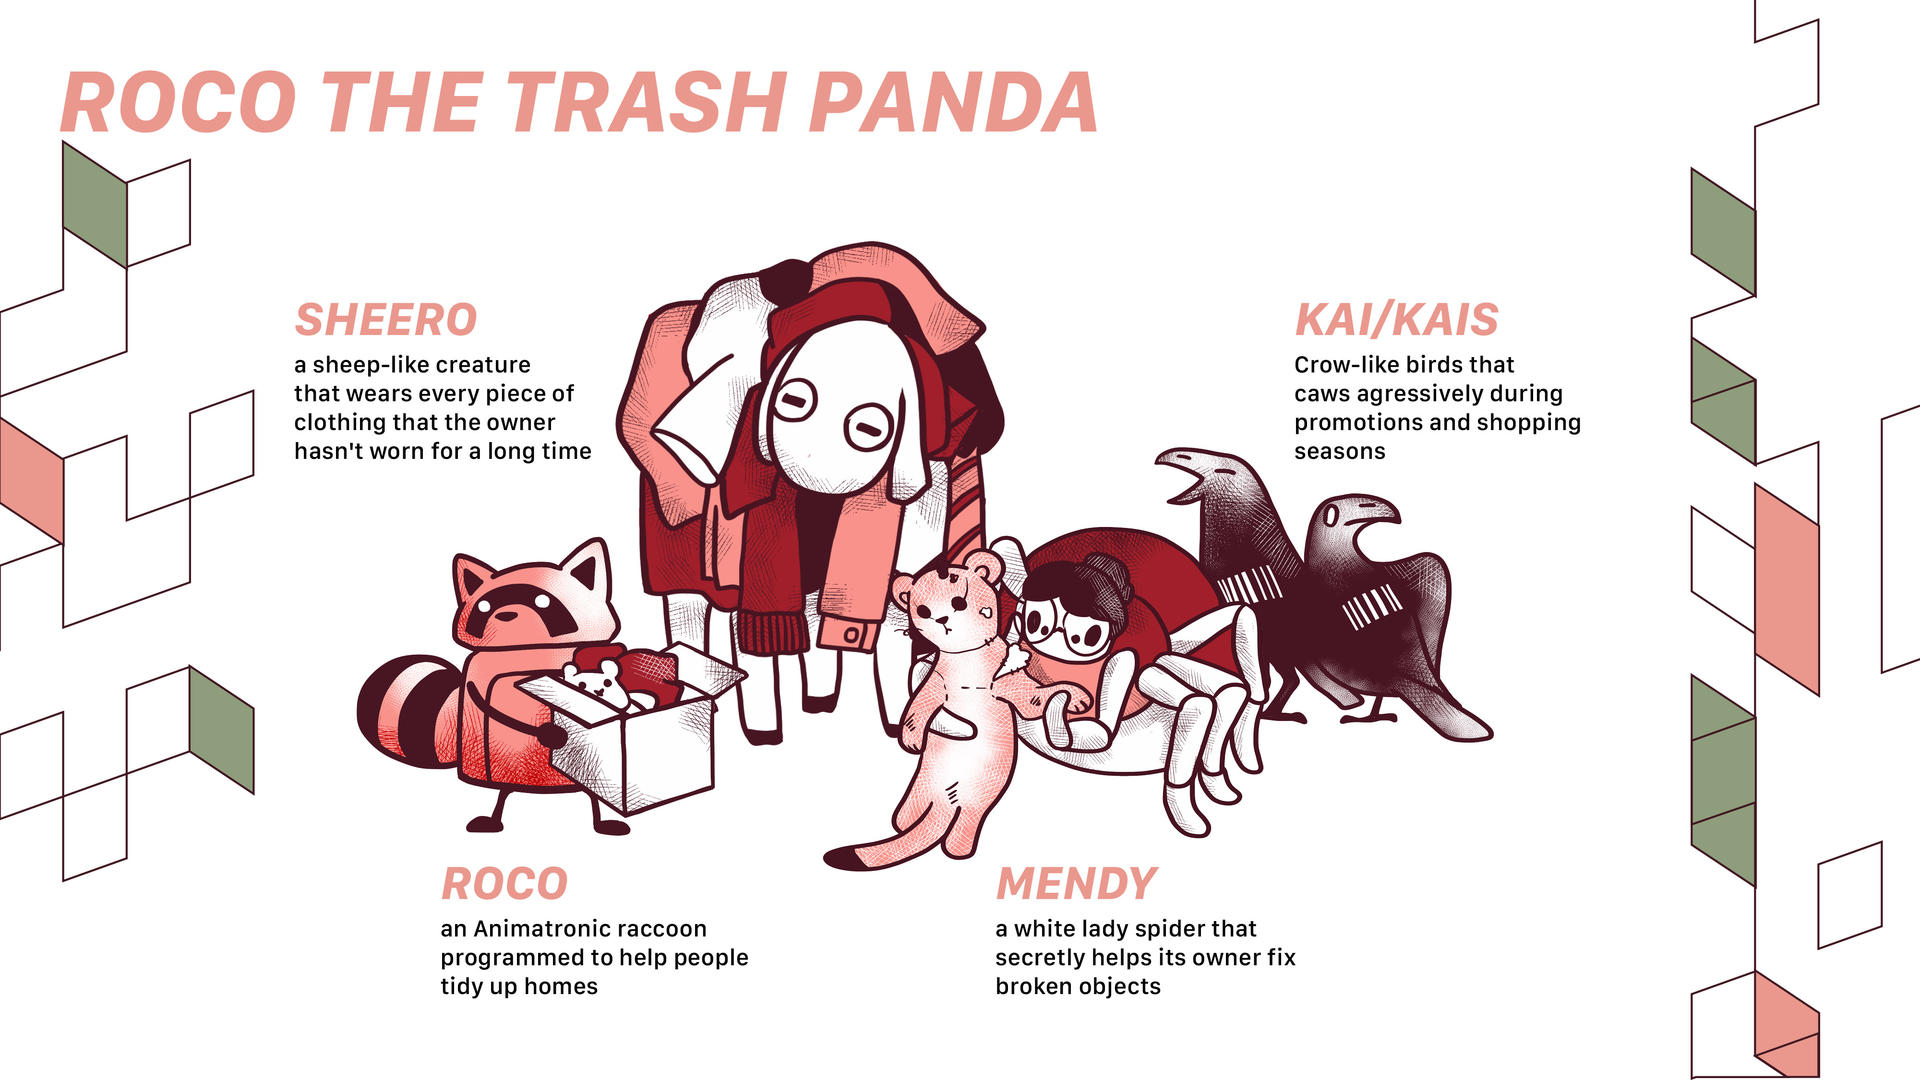 Roco the Trash Panda